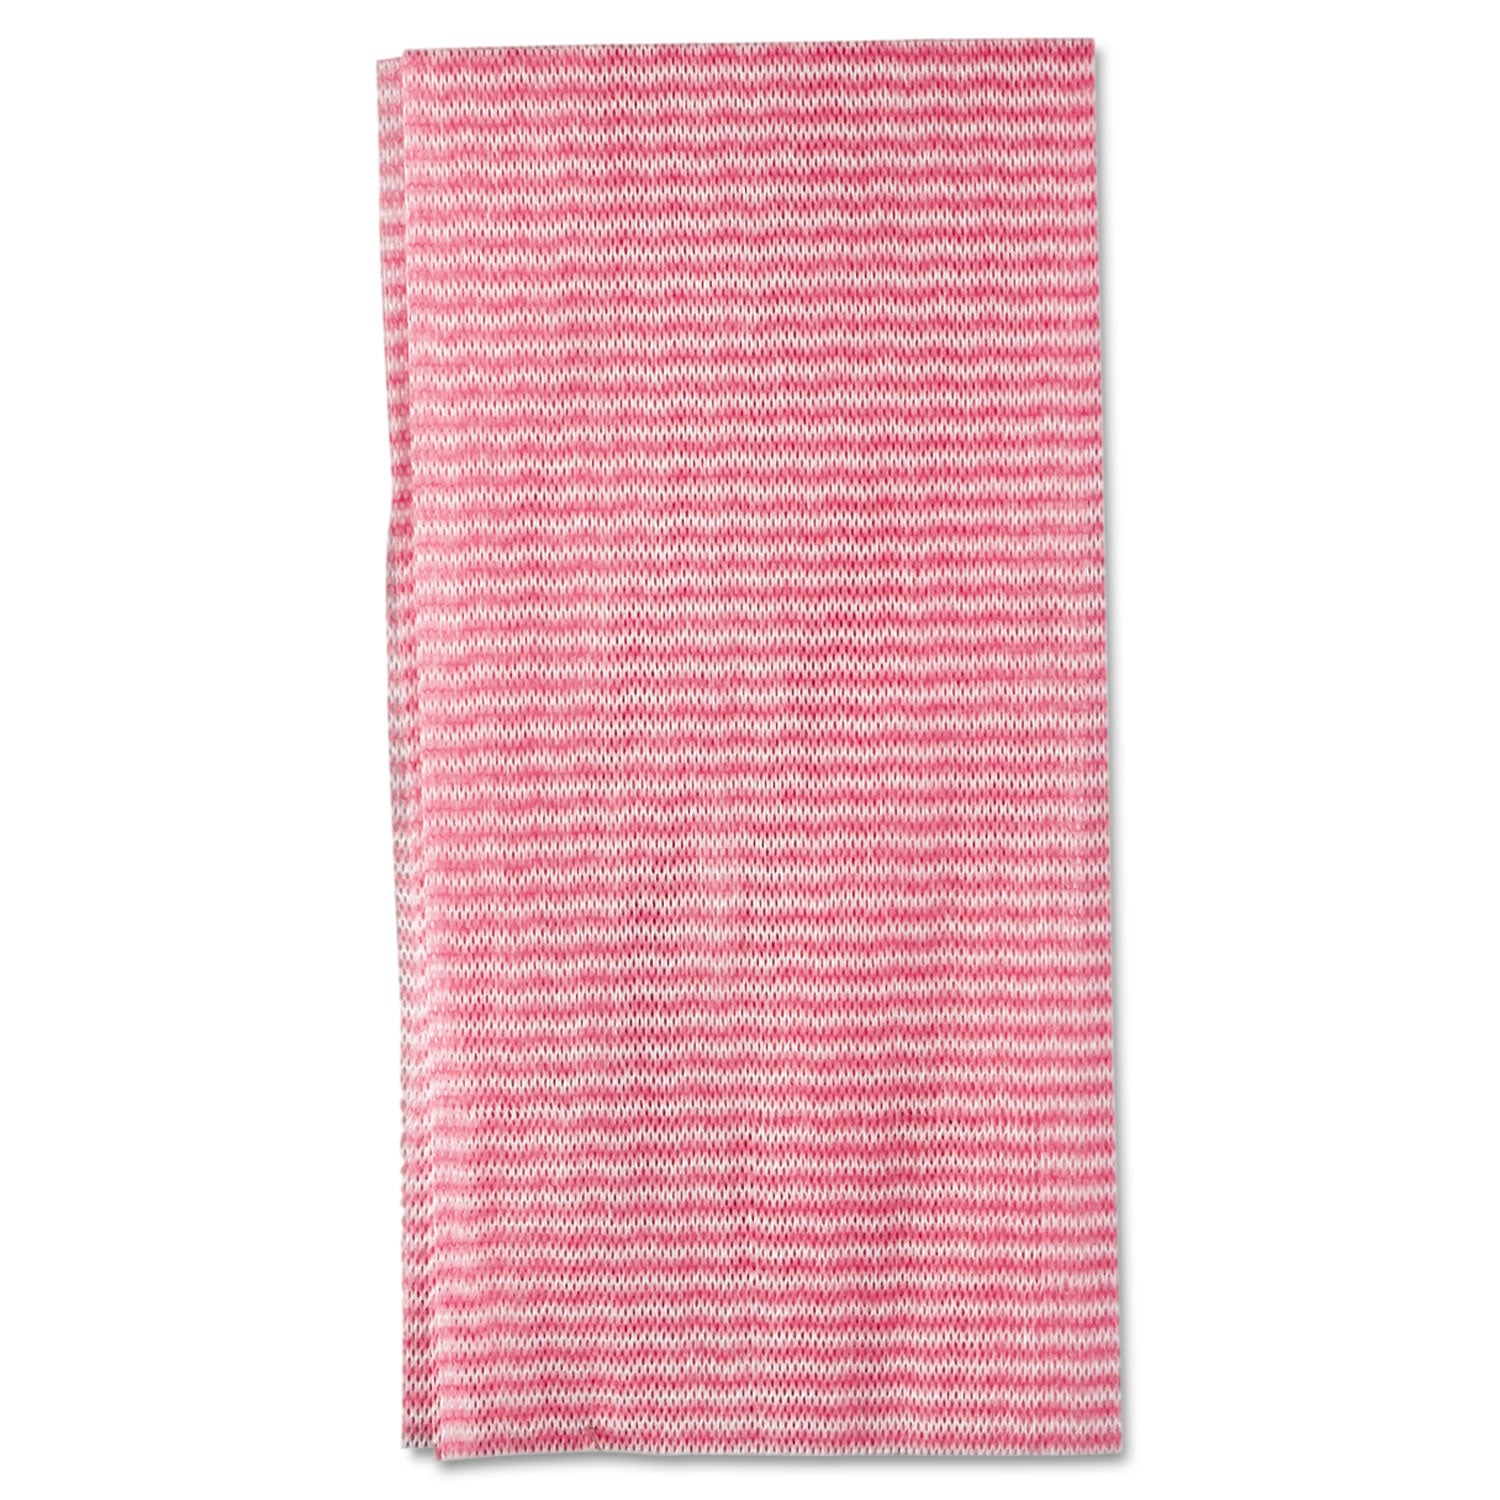 Wet Wipes, 11.5 x 24, White/Pink, 200/Carton - 